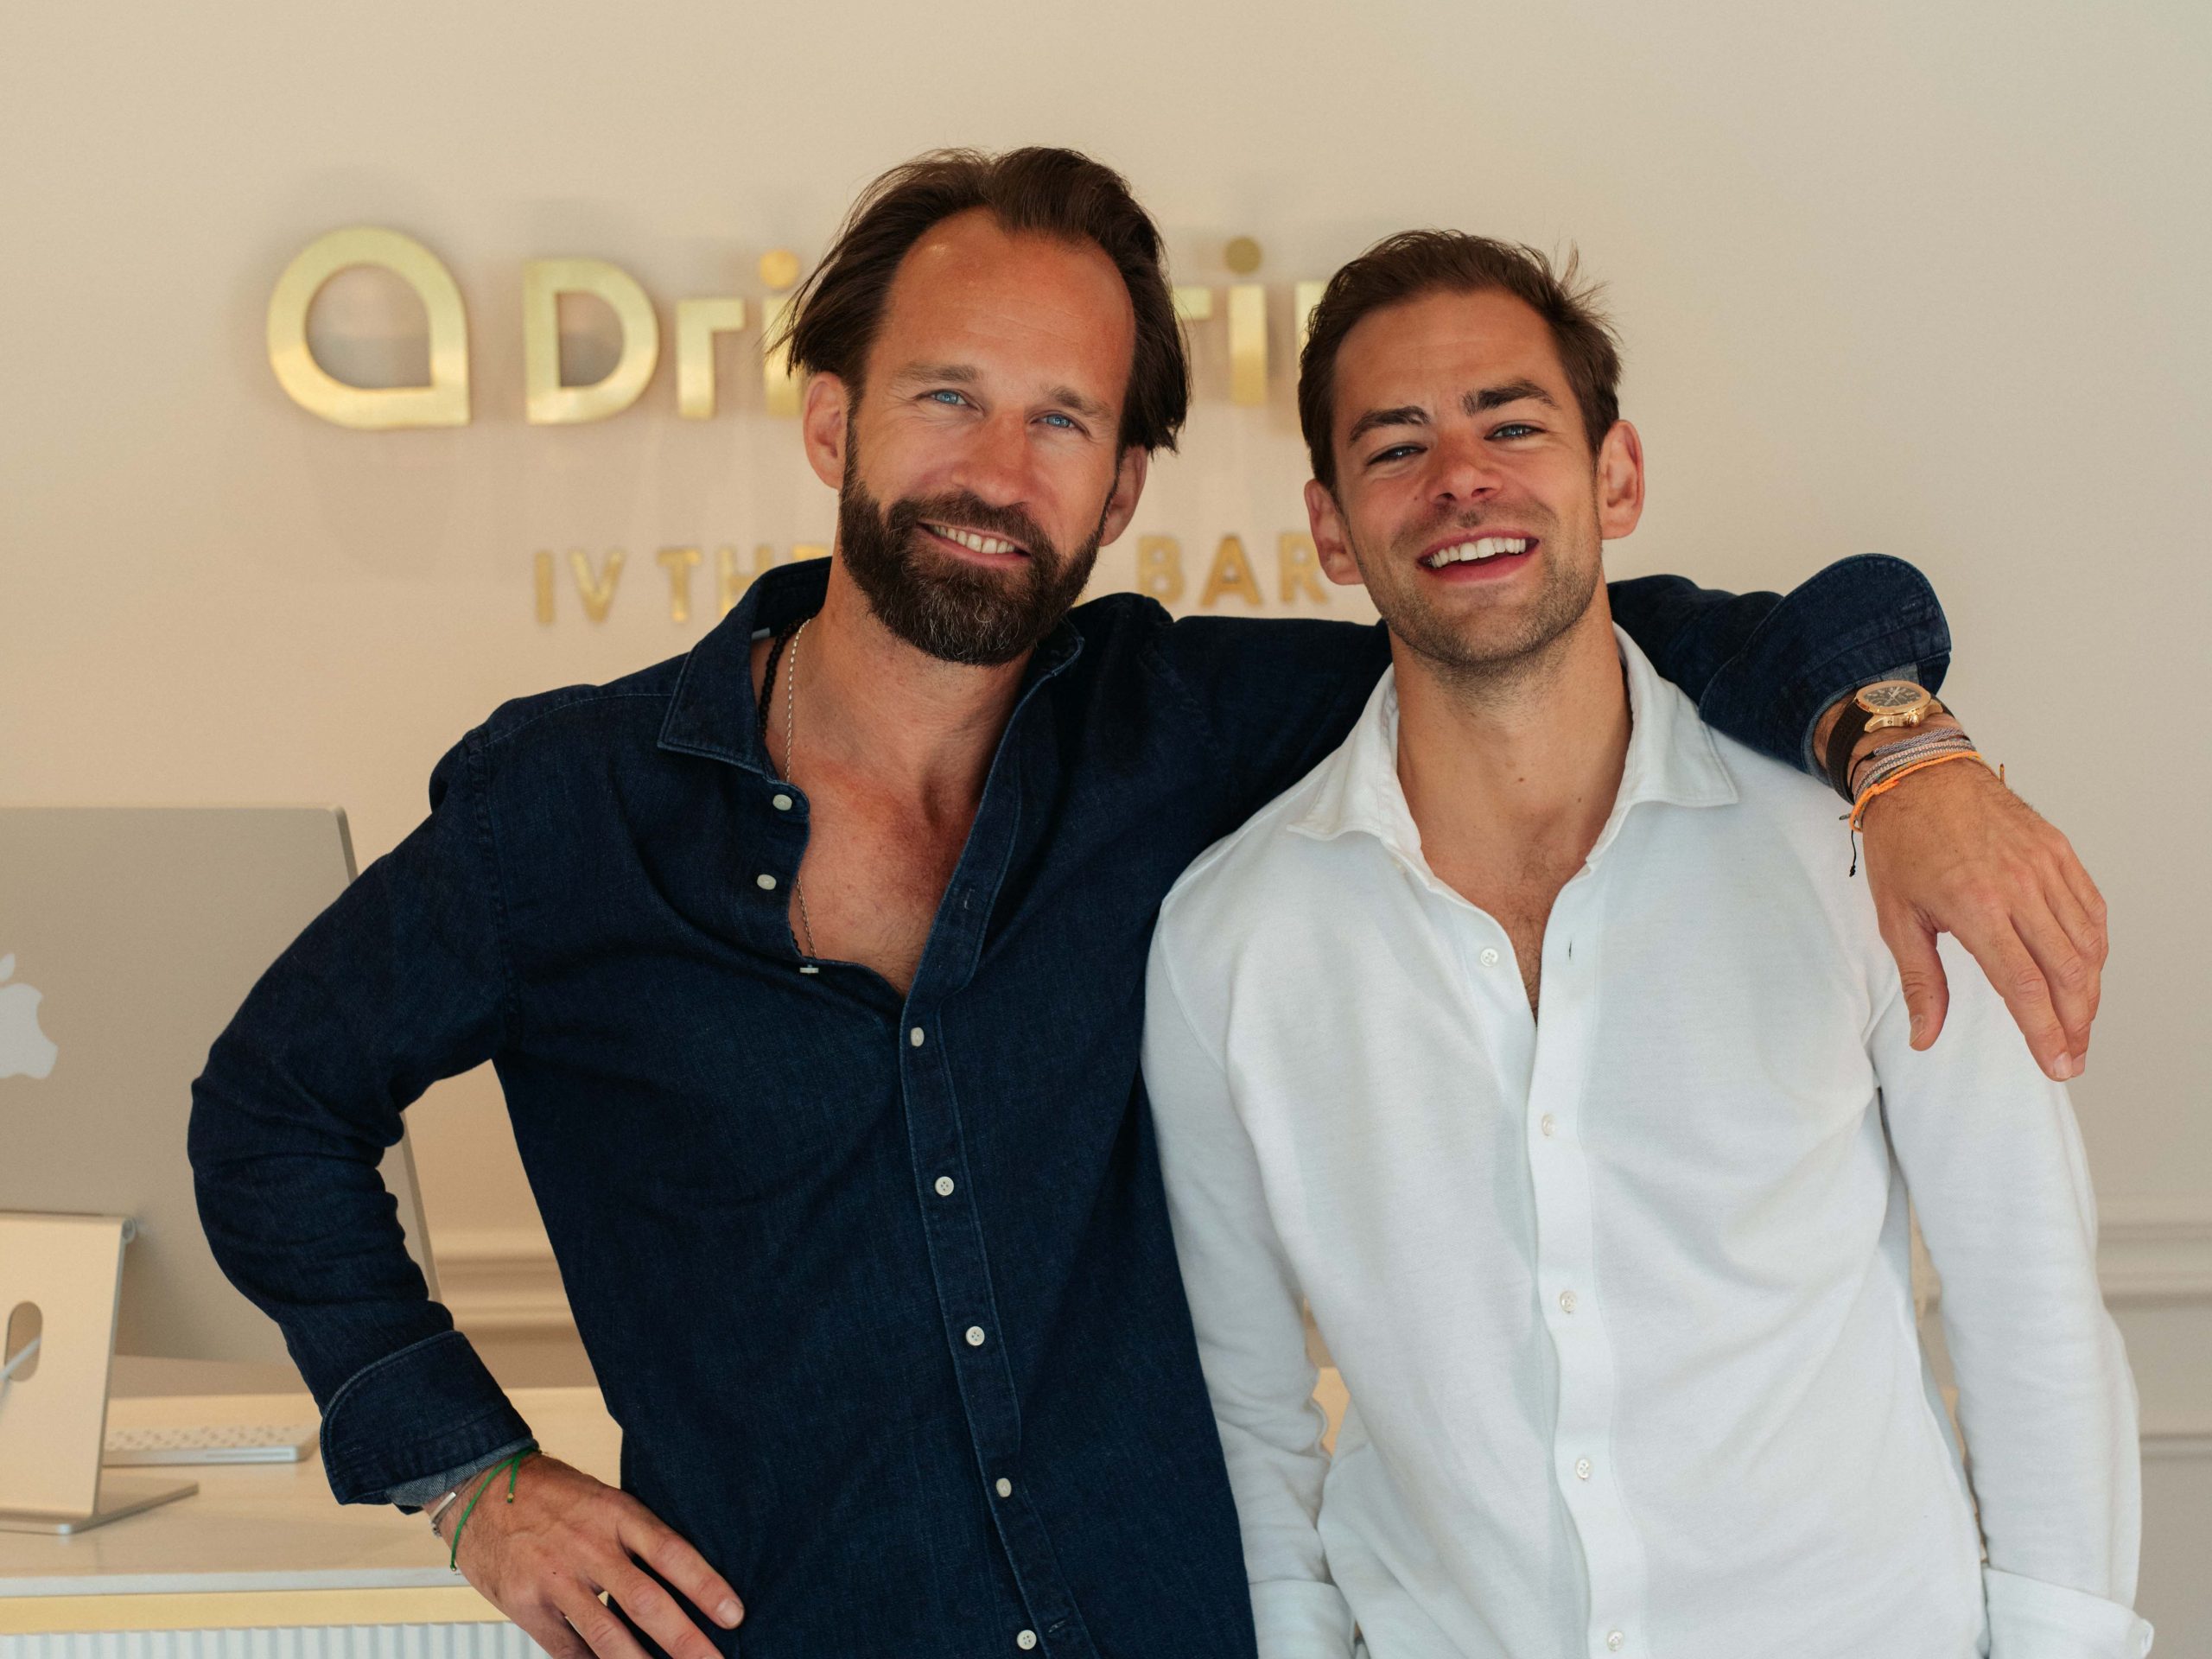 Philip Brand und Jürgen Mehrtens, Gründer von "DripDrip - the IV Therapy Bar"